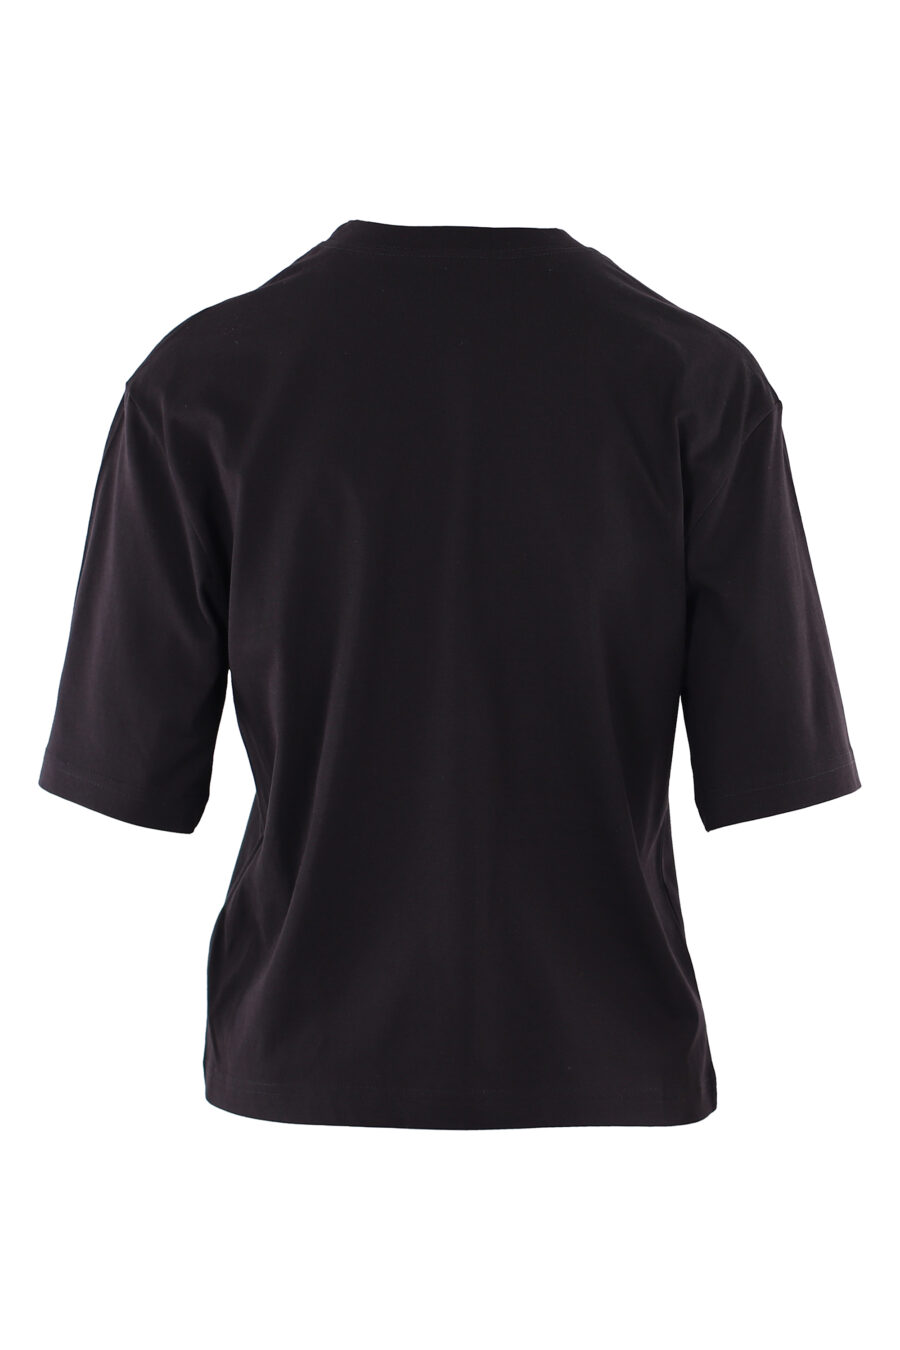 Camiseta negra con logo ojo y estrella - IMG 6118